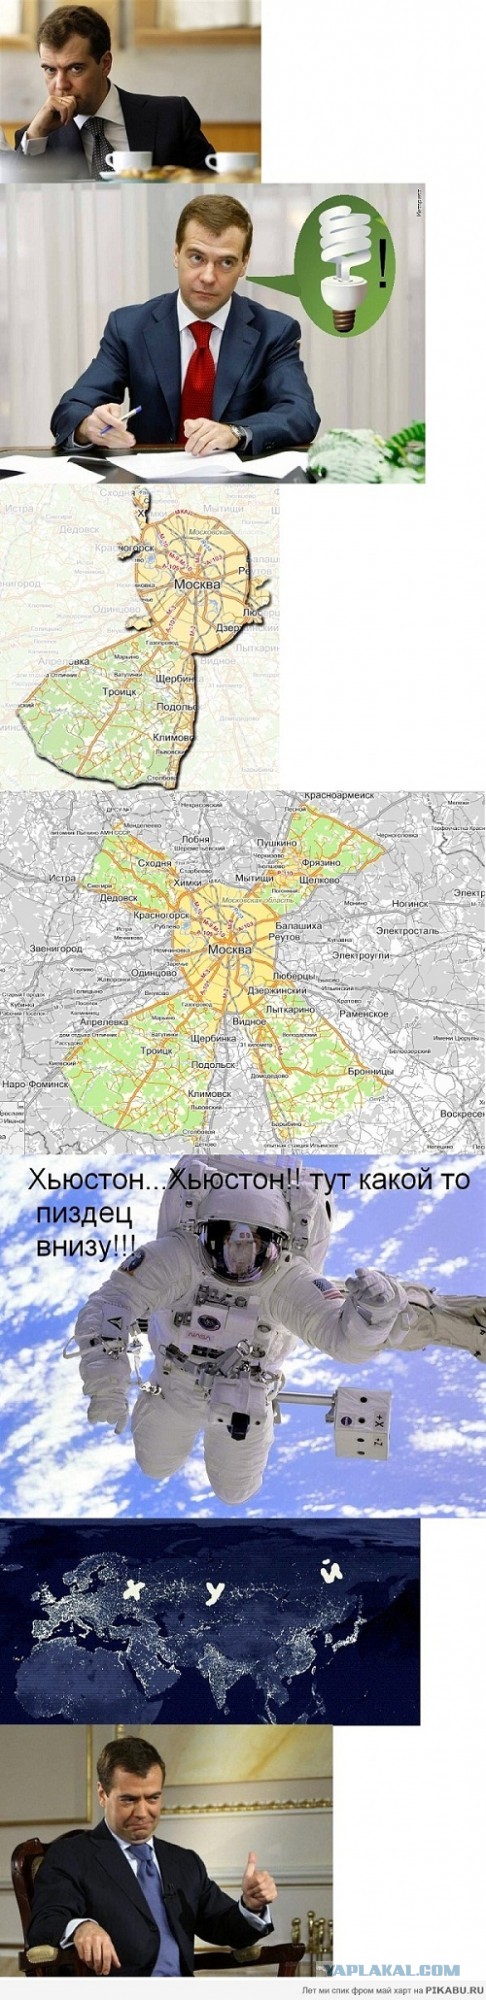 Москва, она такая